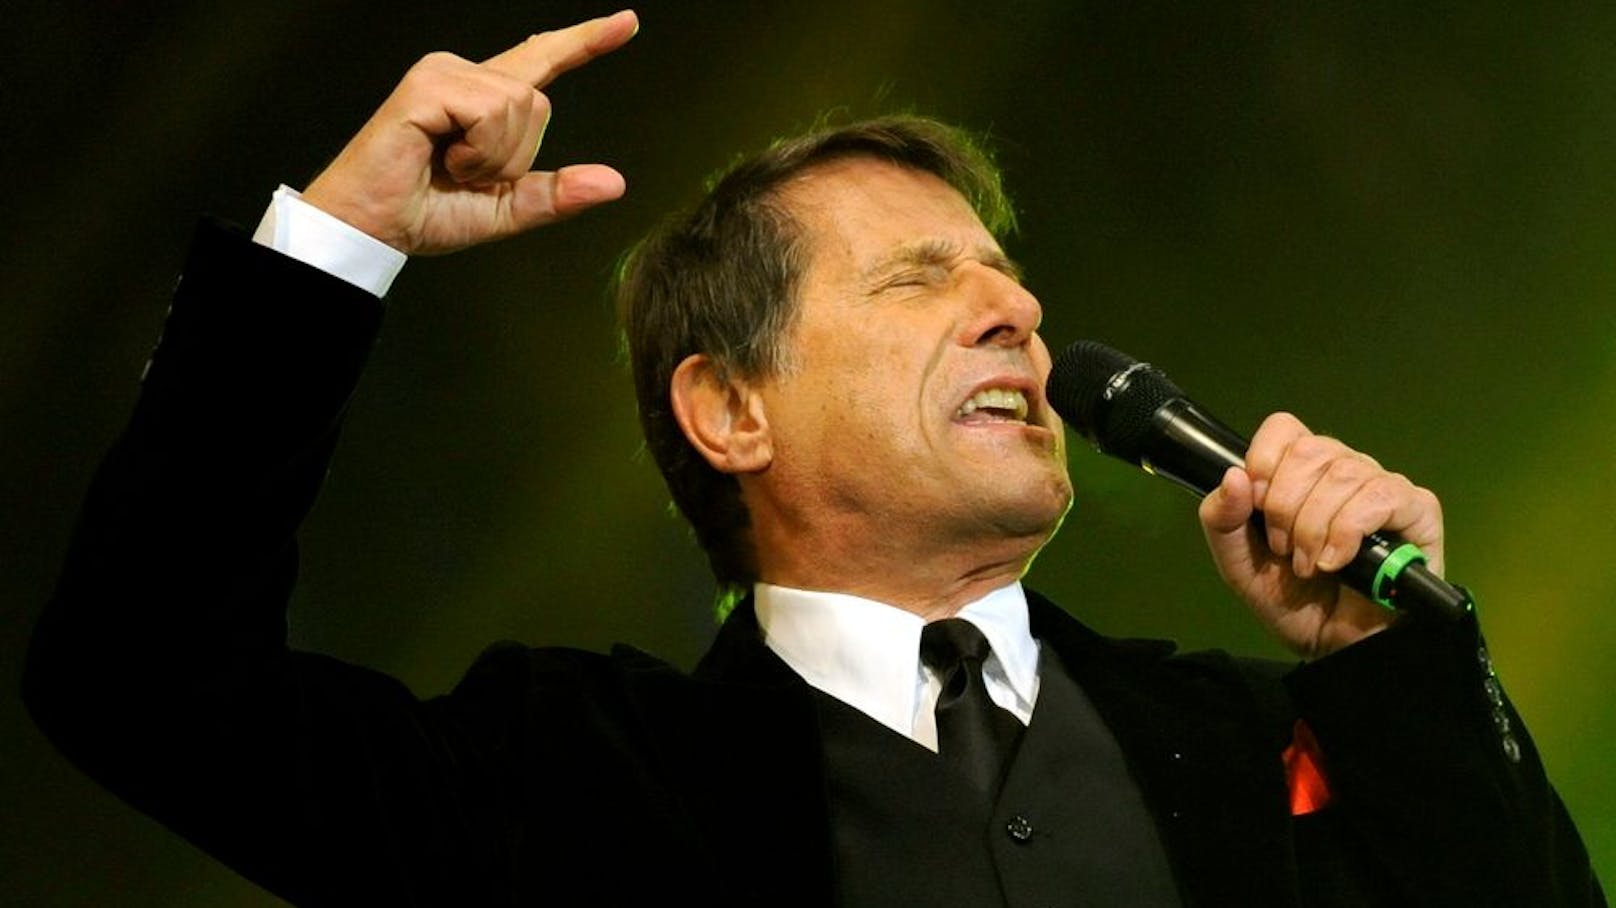 In den Jahren zwischen 1967 und 2014 spielte Udo Jürgens 25 Tourneen. Mehr als 6,5 Millionen Menschen erlebten ihn dabei live.